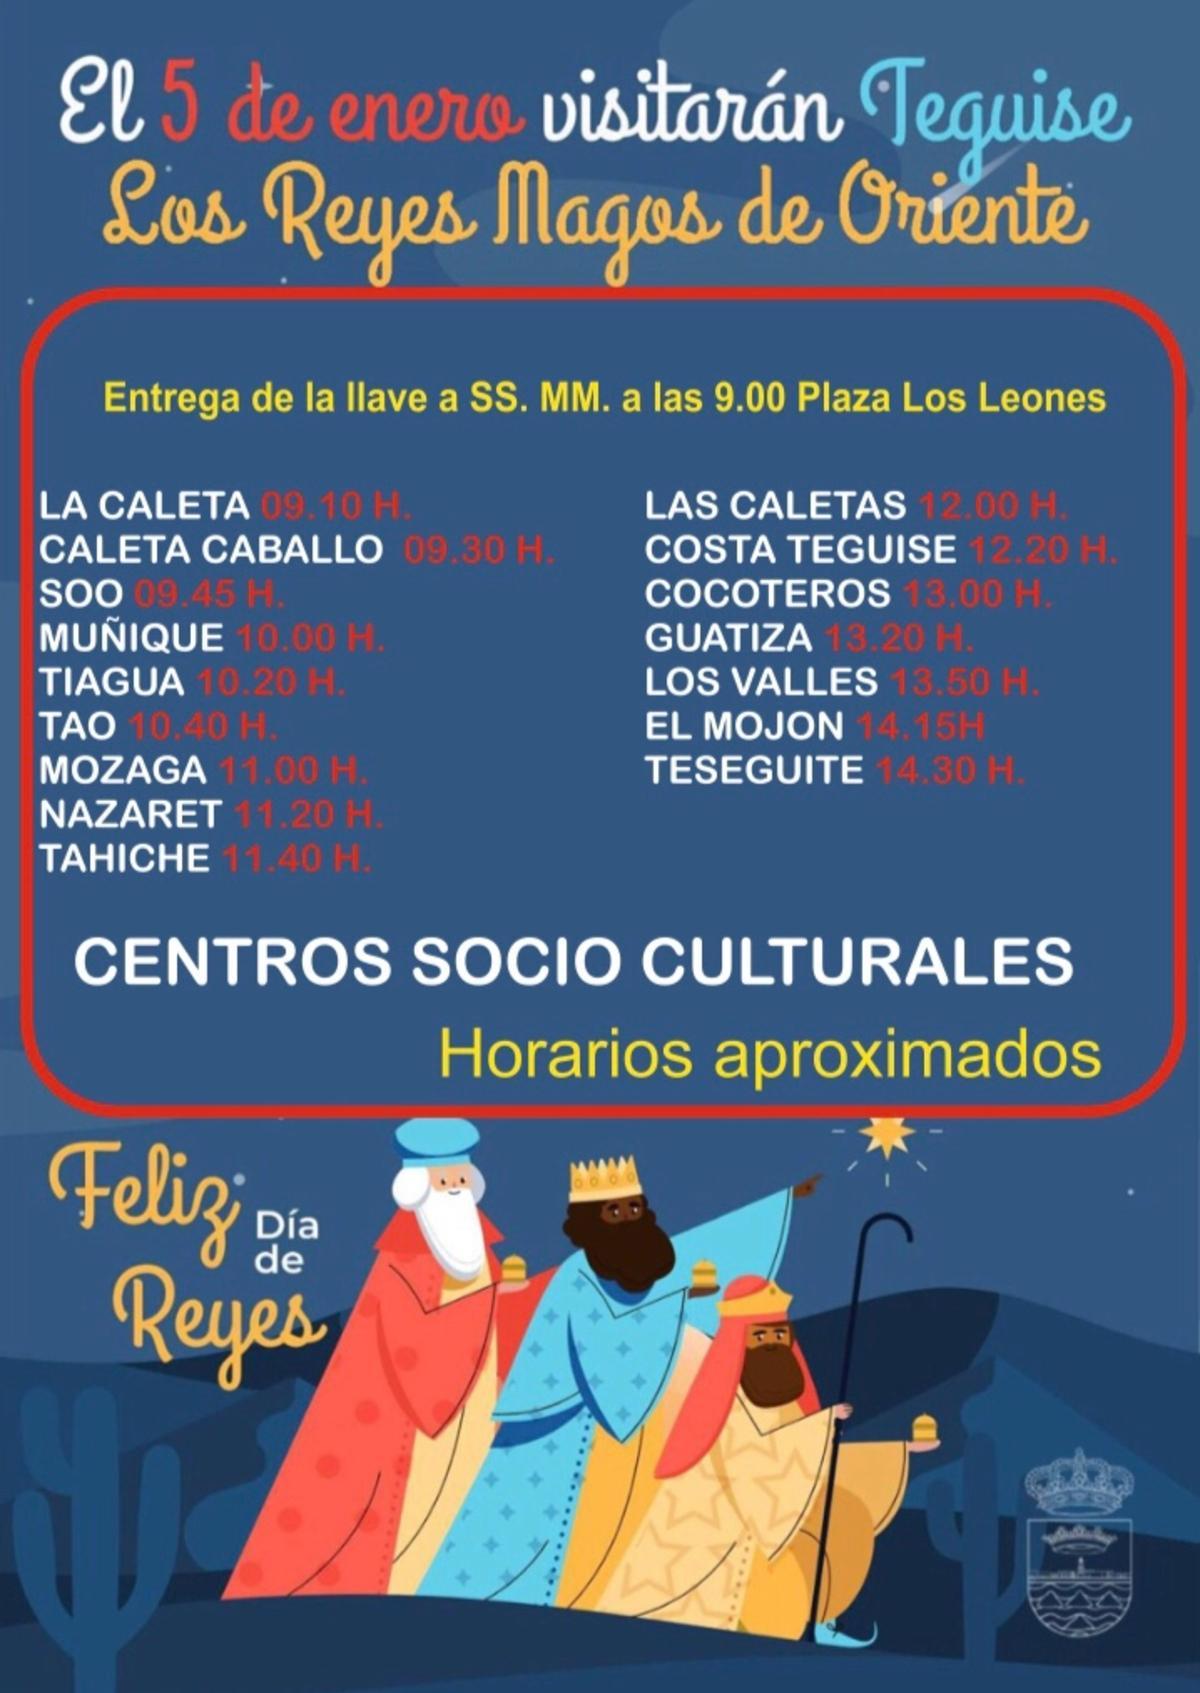 Ruta de los Reyes Magos de Oriente en los centros socioculturales del municipio de Teguise.